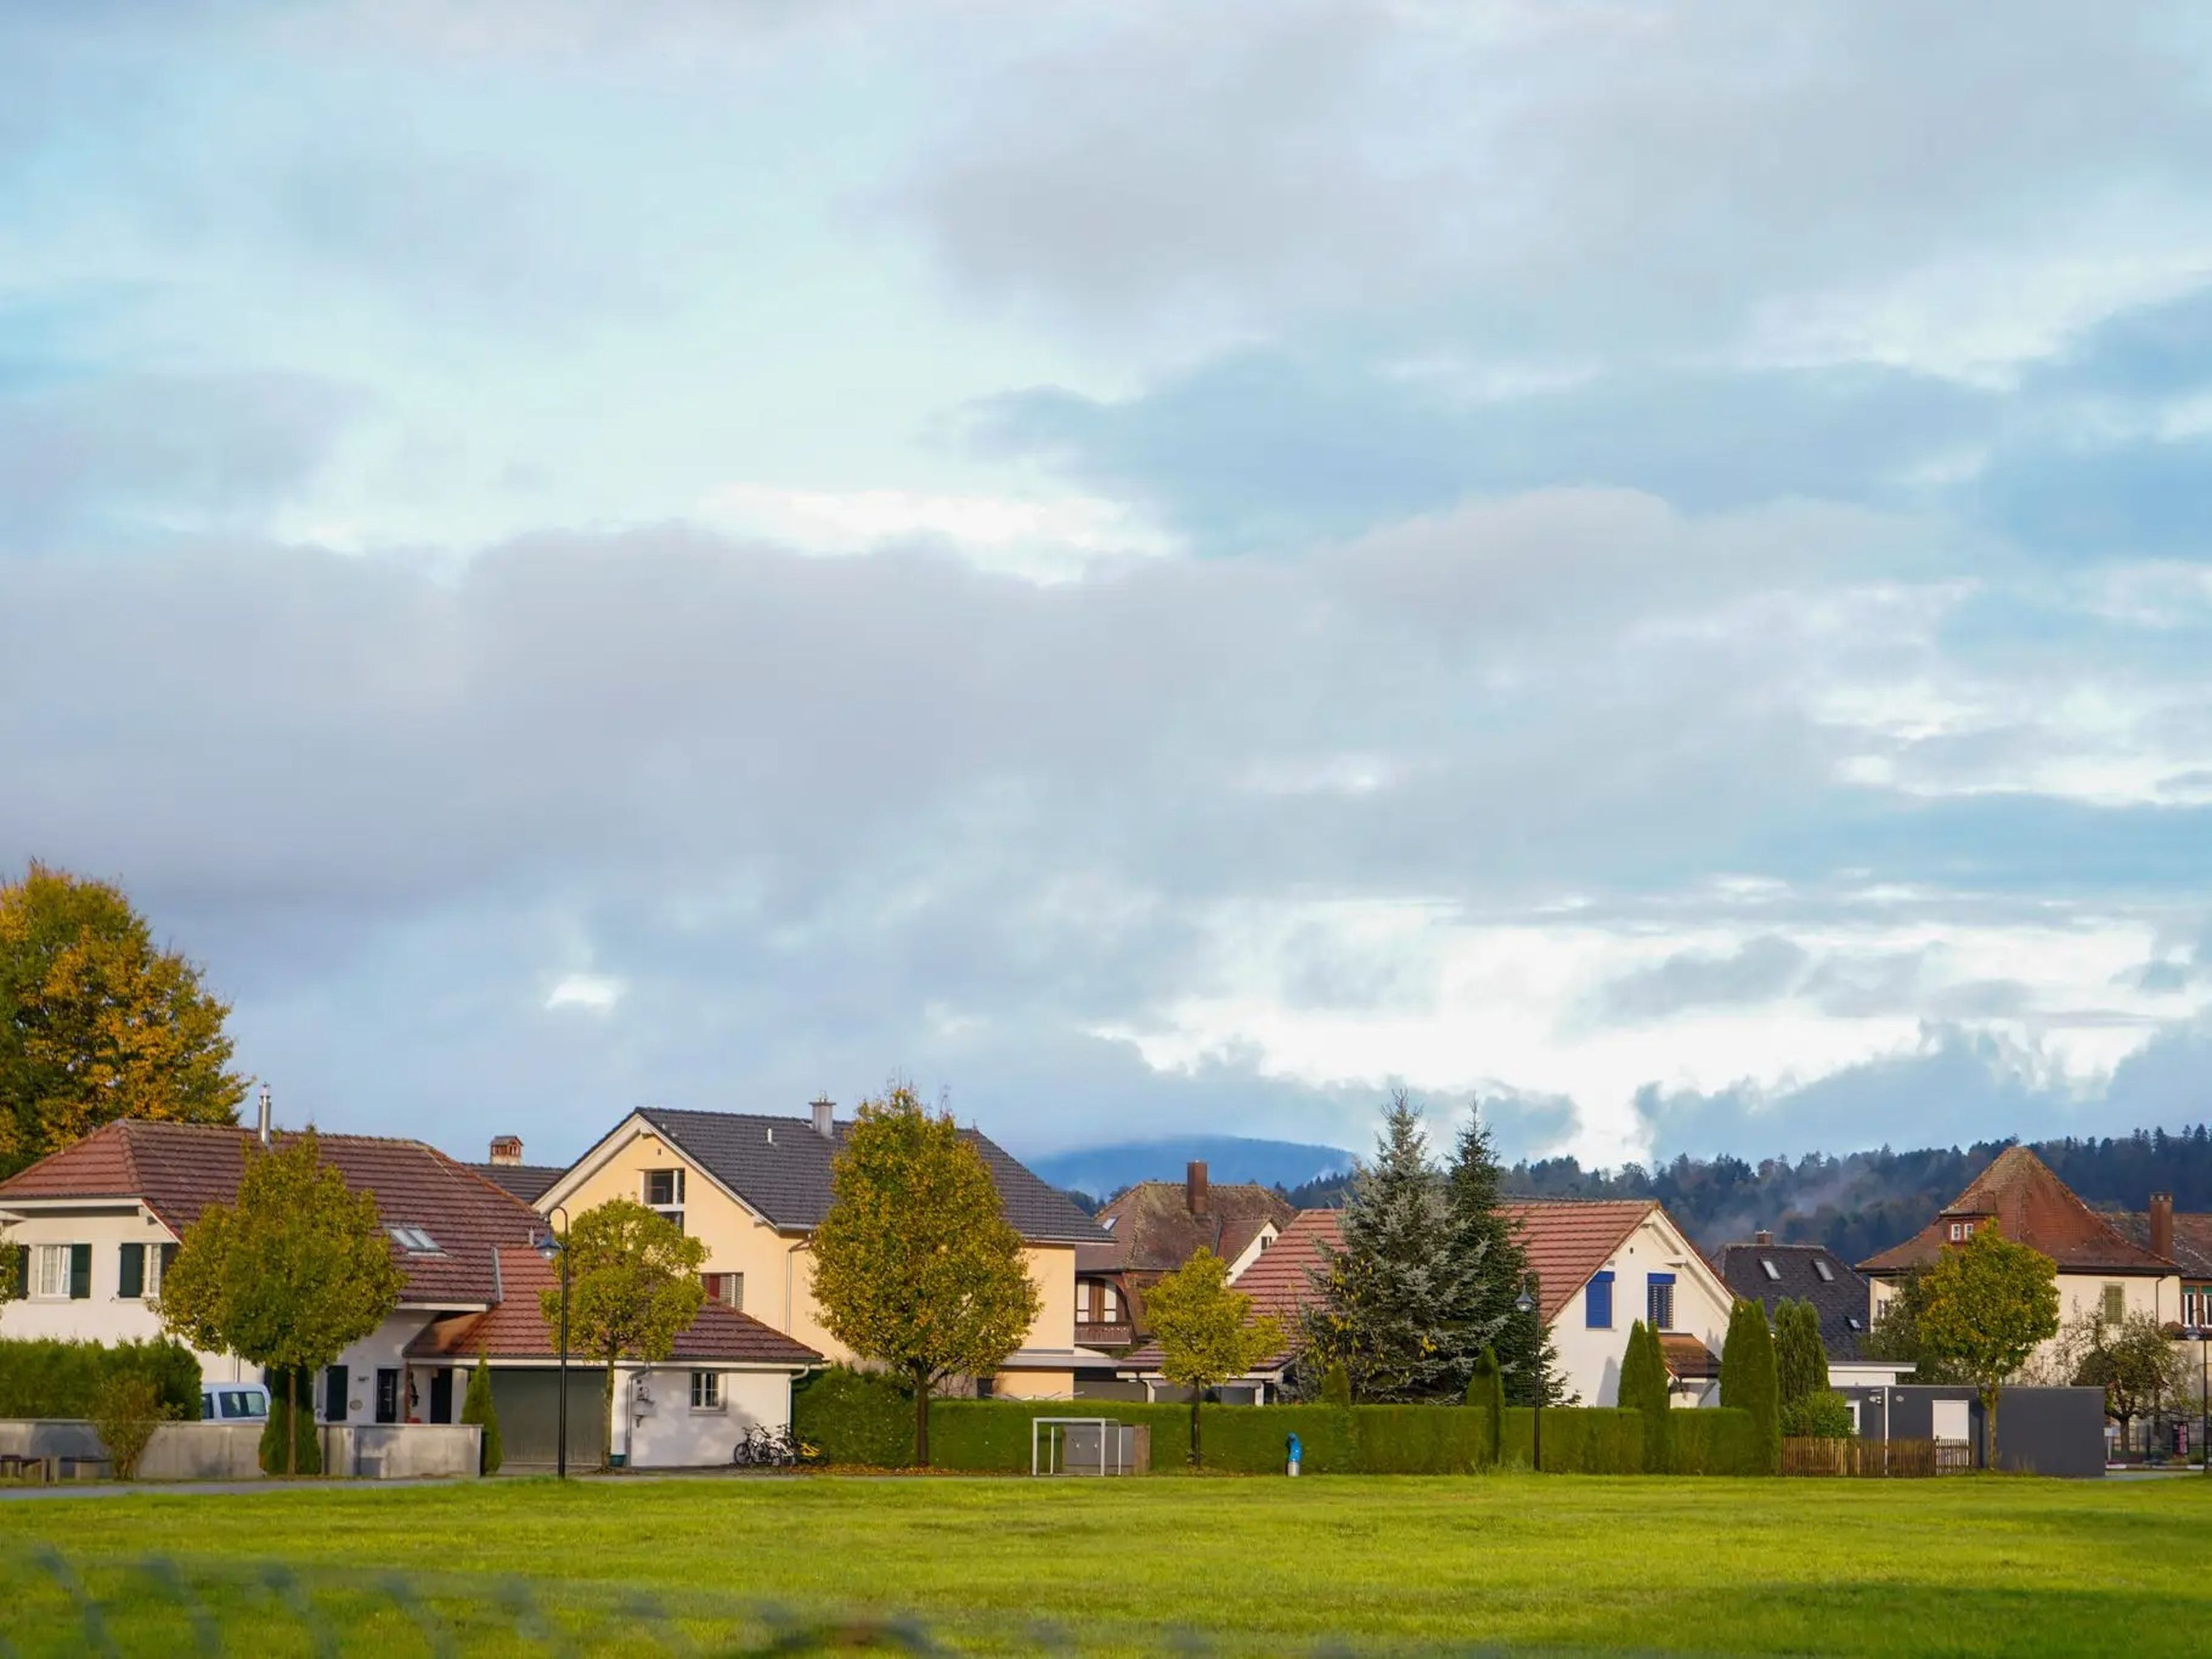 Casas que rodean el alojamiento de Airbnb de la autora en Roggwil, Suiza, en octubre de 2022.